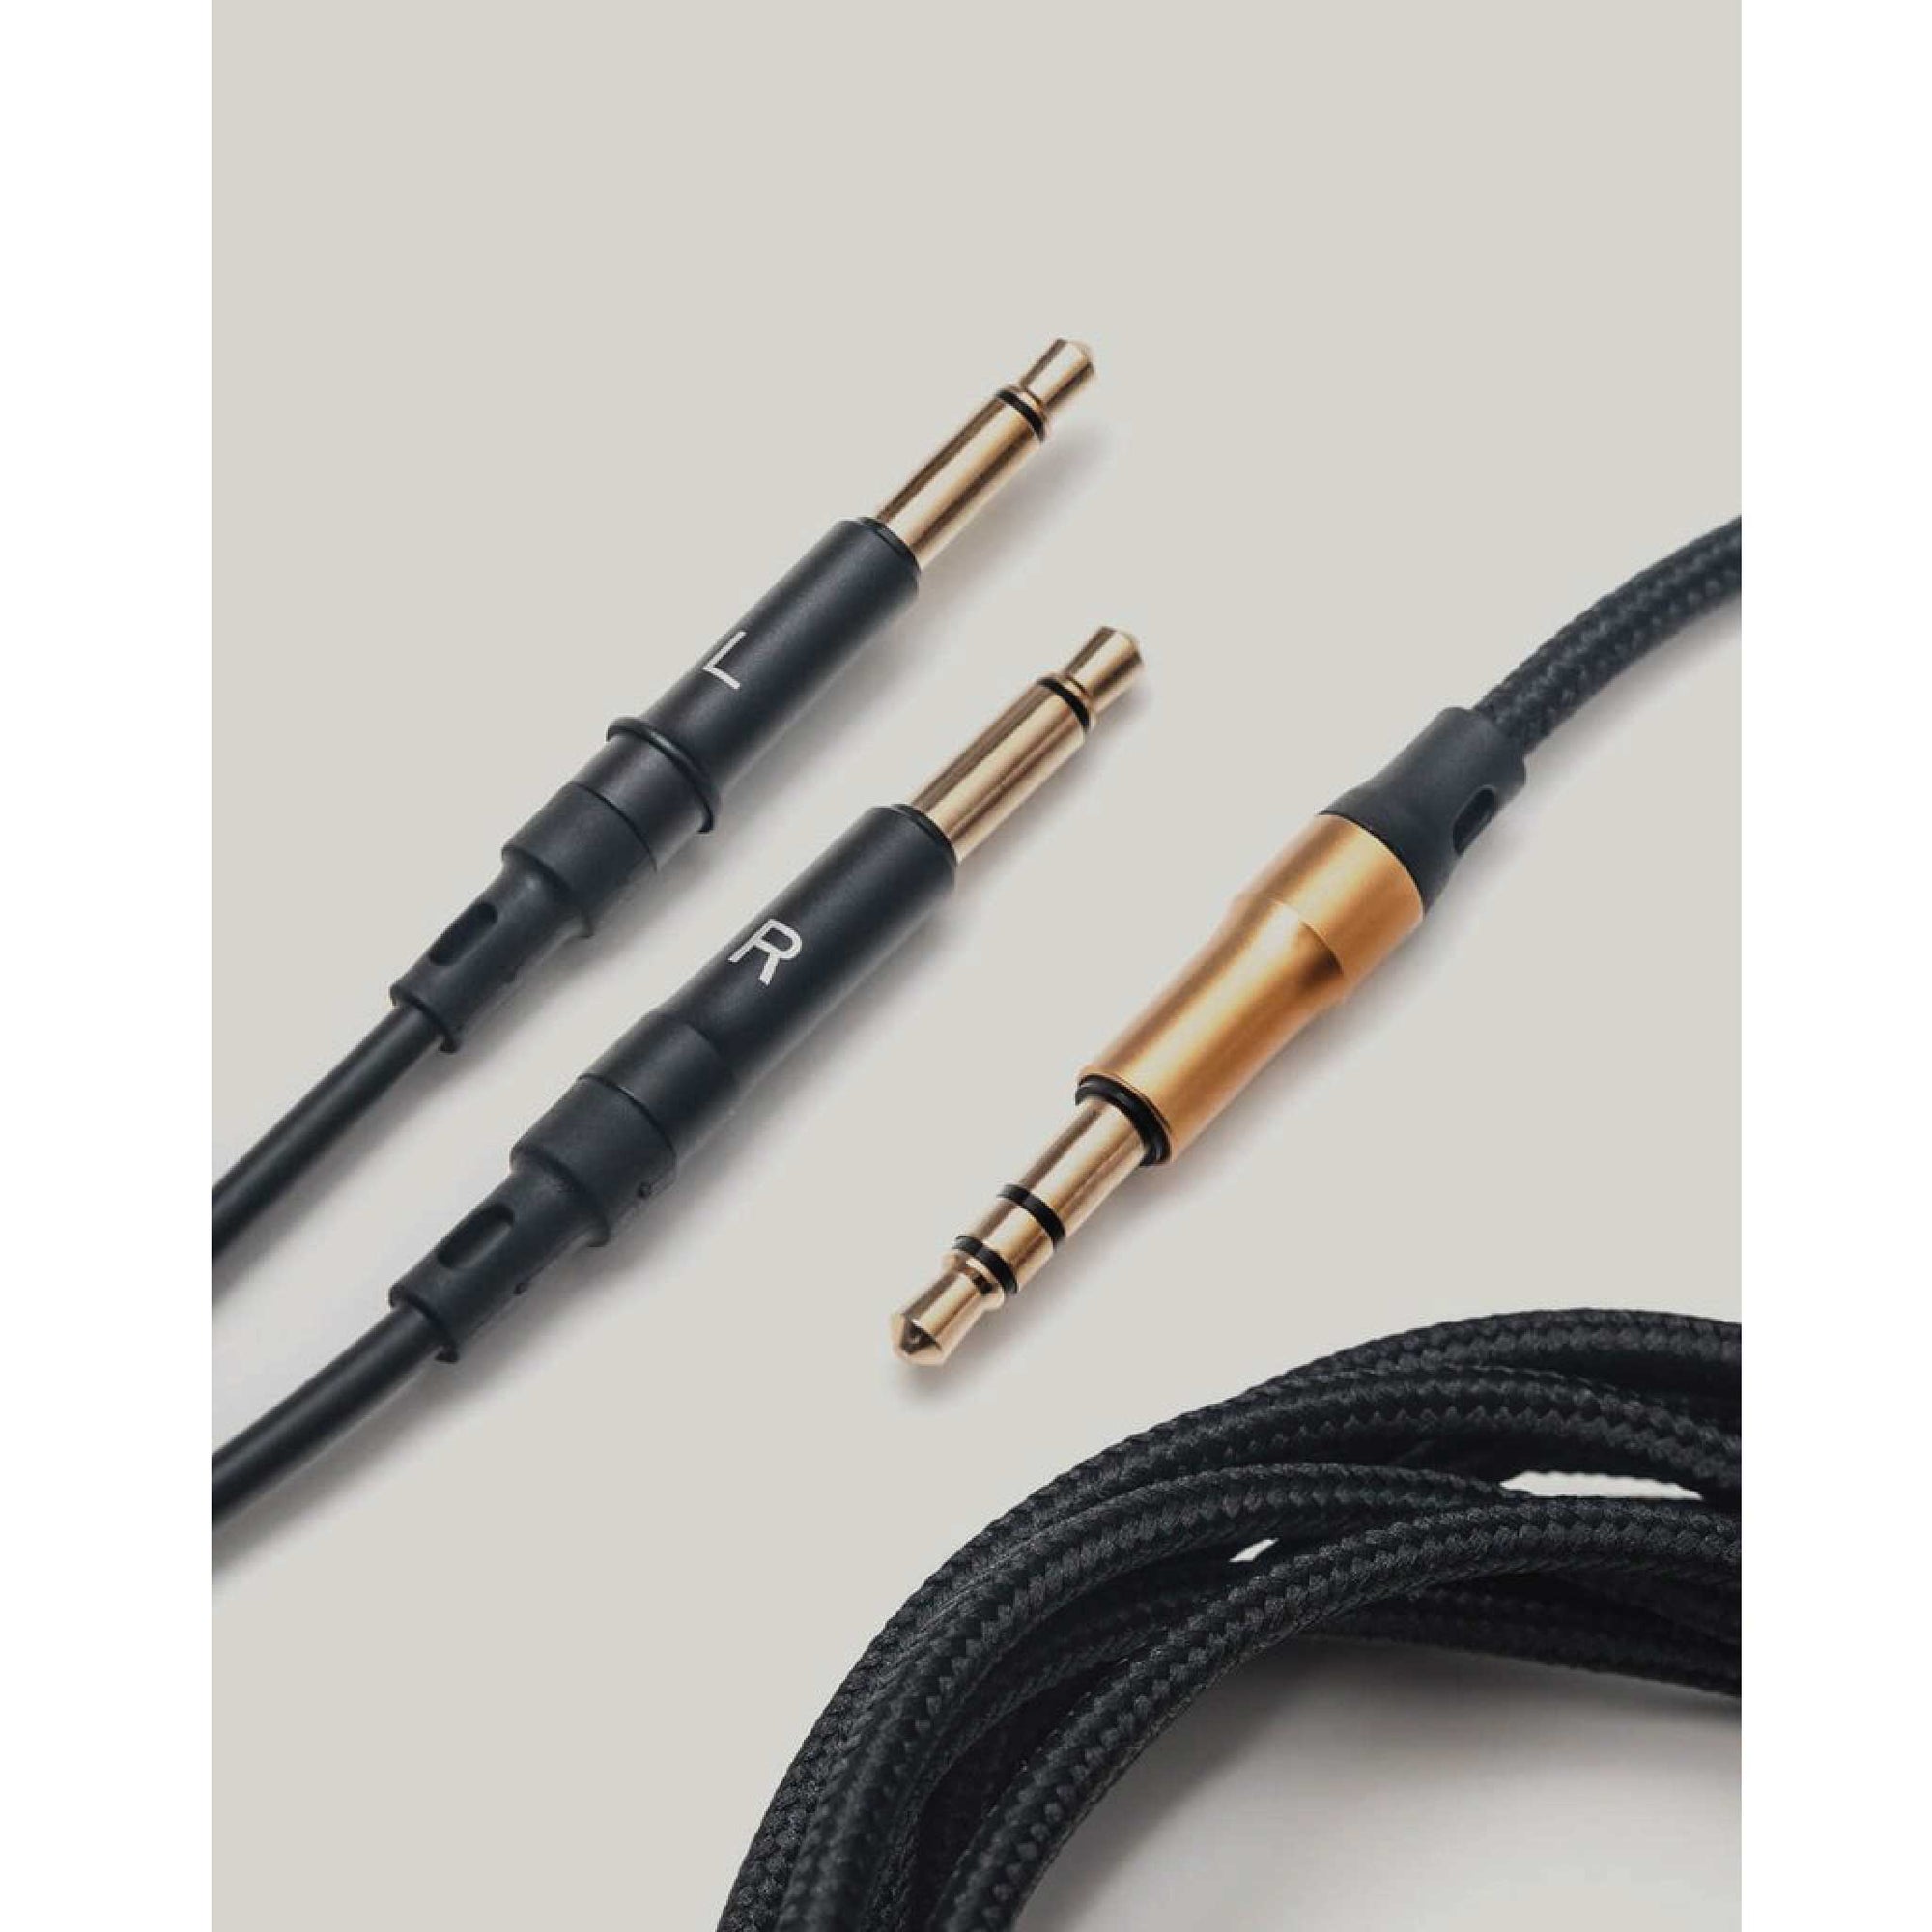 Meze Mono 3.5mm 99 Series Standard Cables